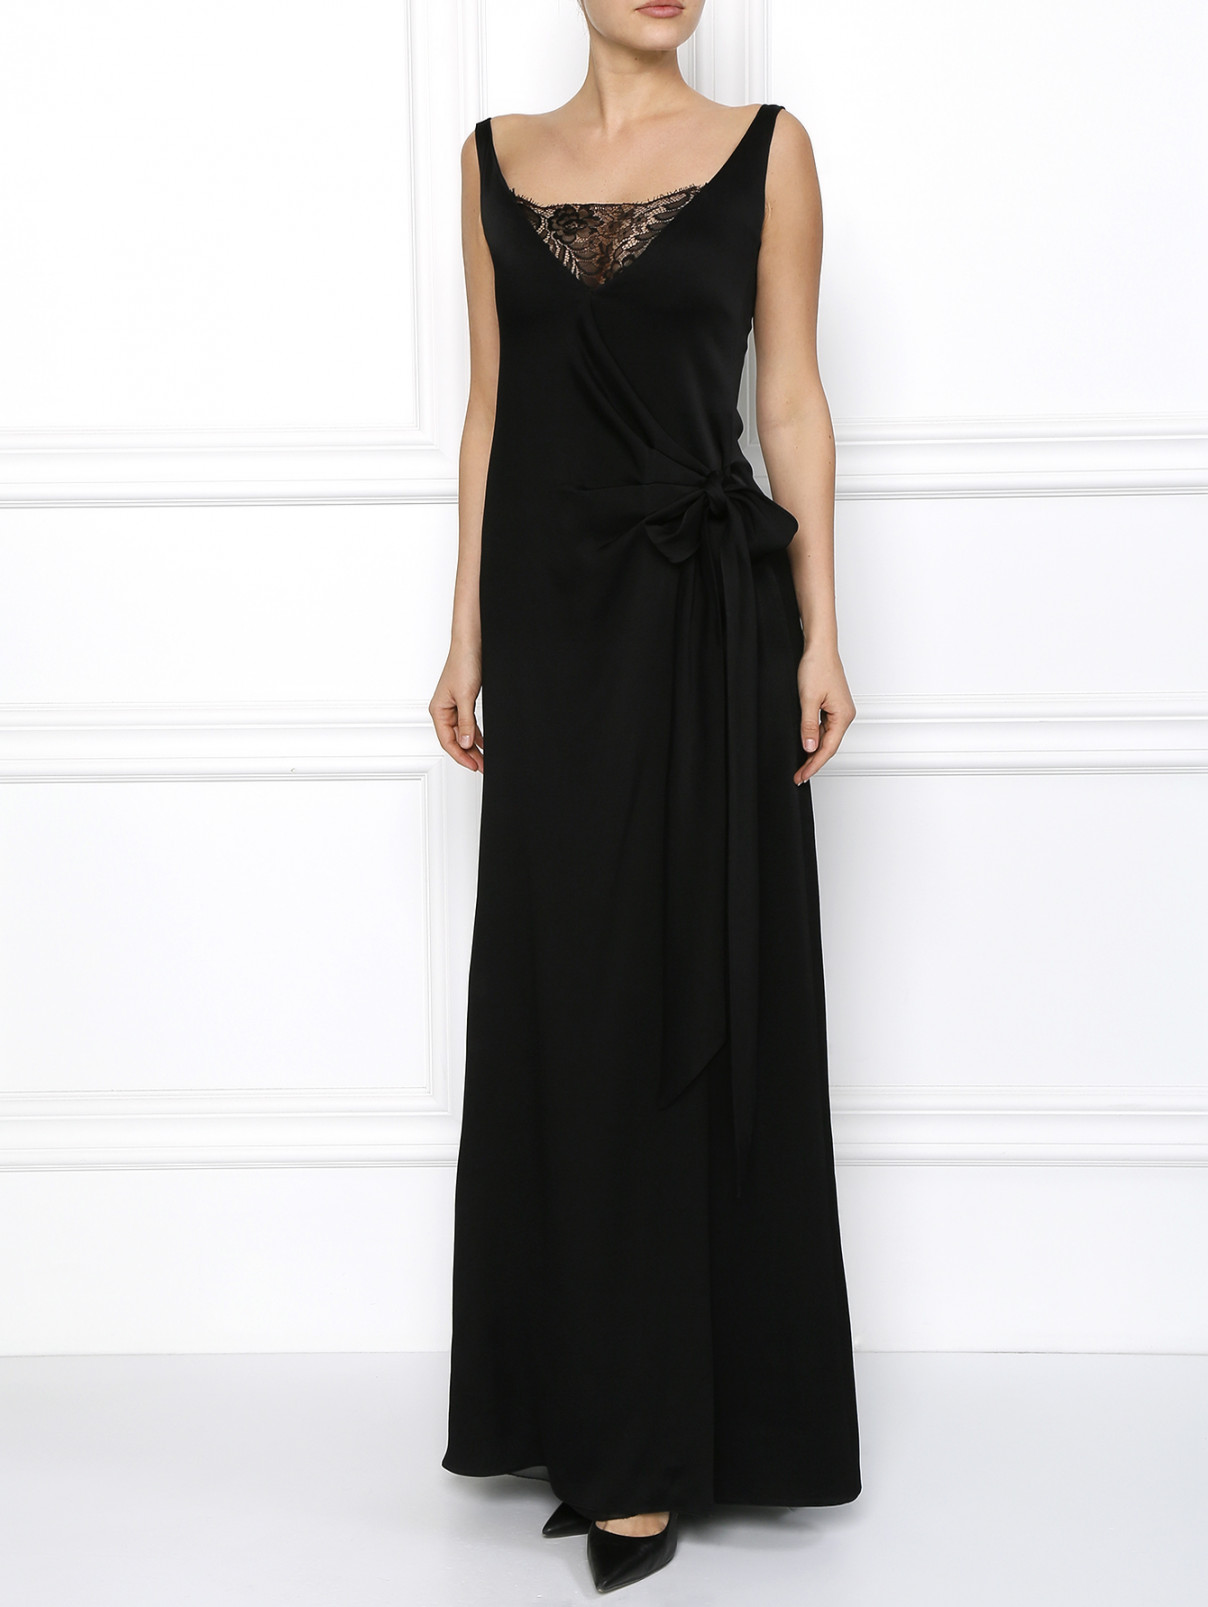 Платье в пол с кружевным декором Emporio Armani  –  Модель Общий вид  – Цвет:  Черный